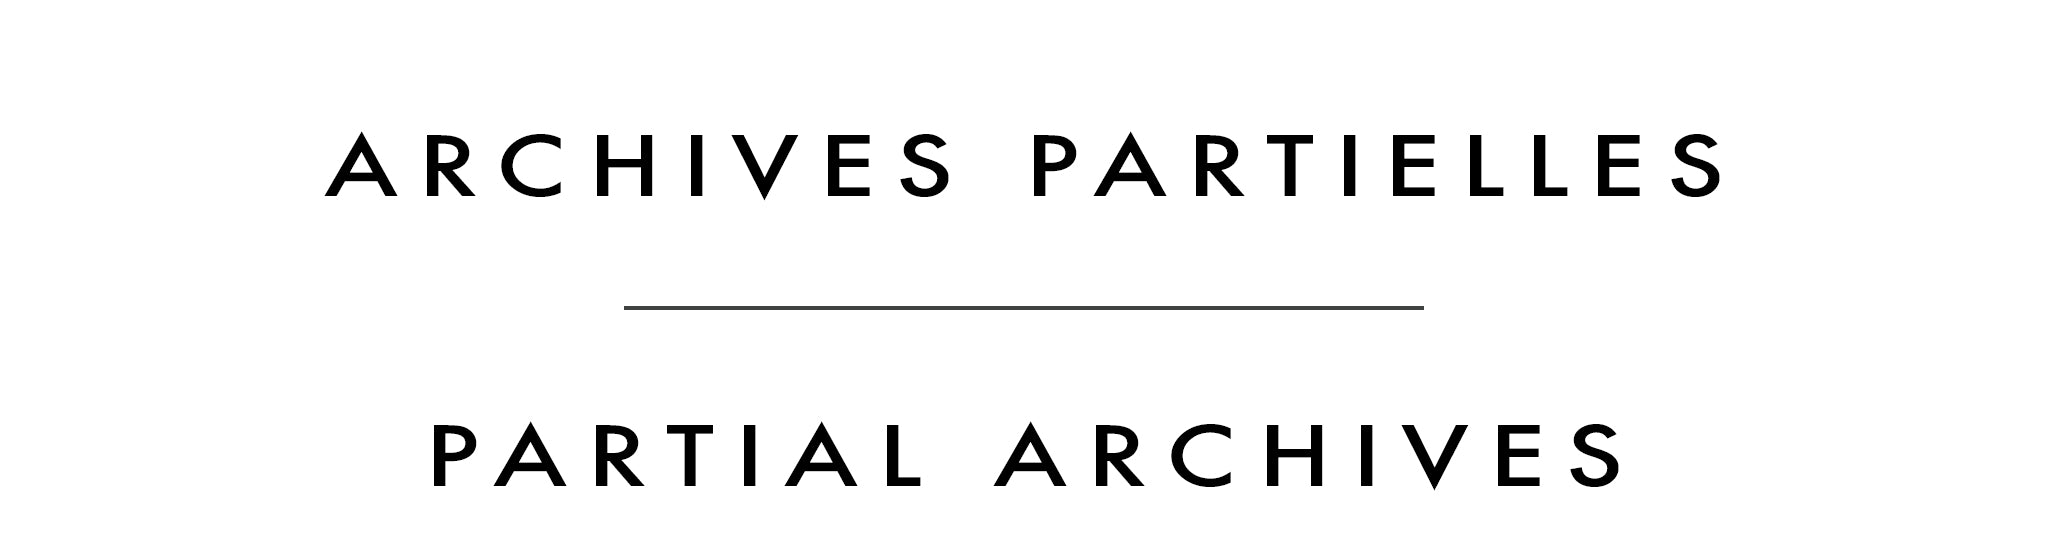 Archives partielles | Partial Archives | Rémi Clark